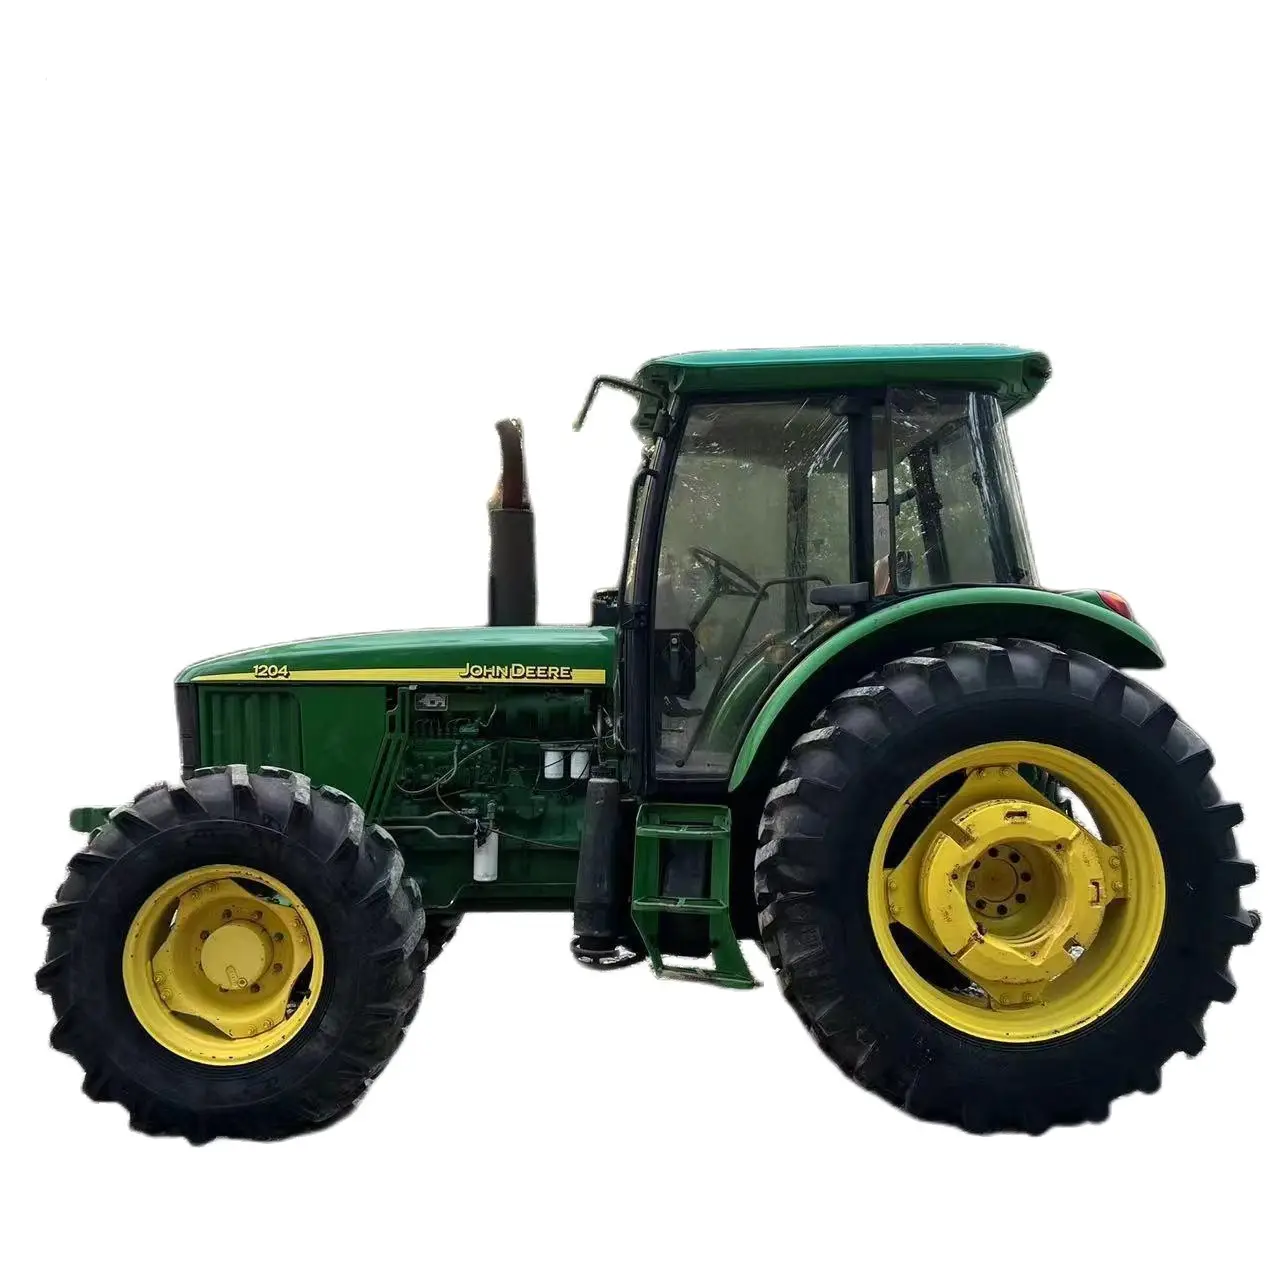 Barato JOHN Precio de fábrica Venta caliente precio Granja agricultura DEERE 1204 tractores usados para la venta